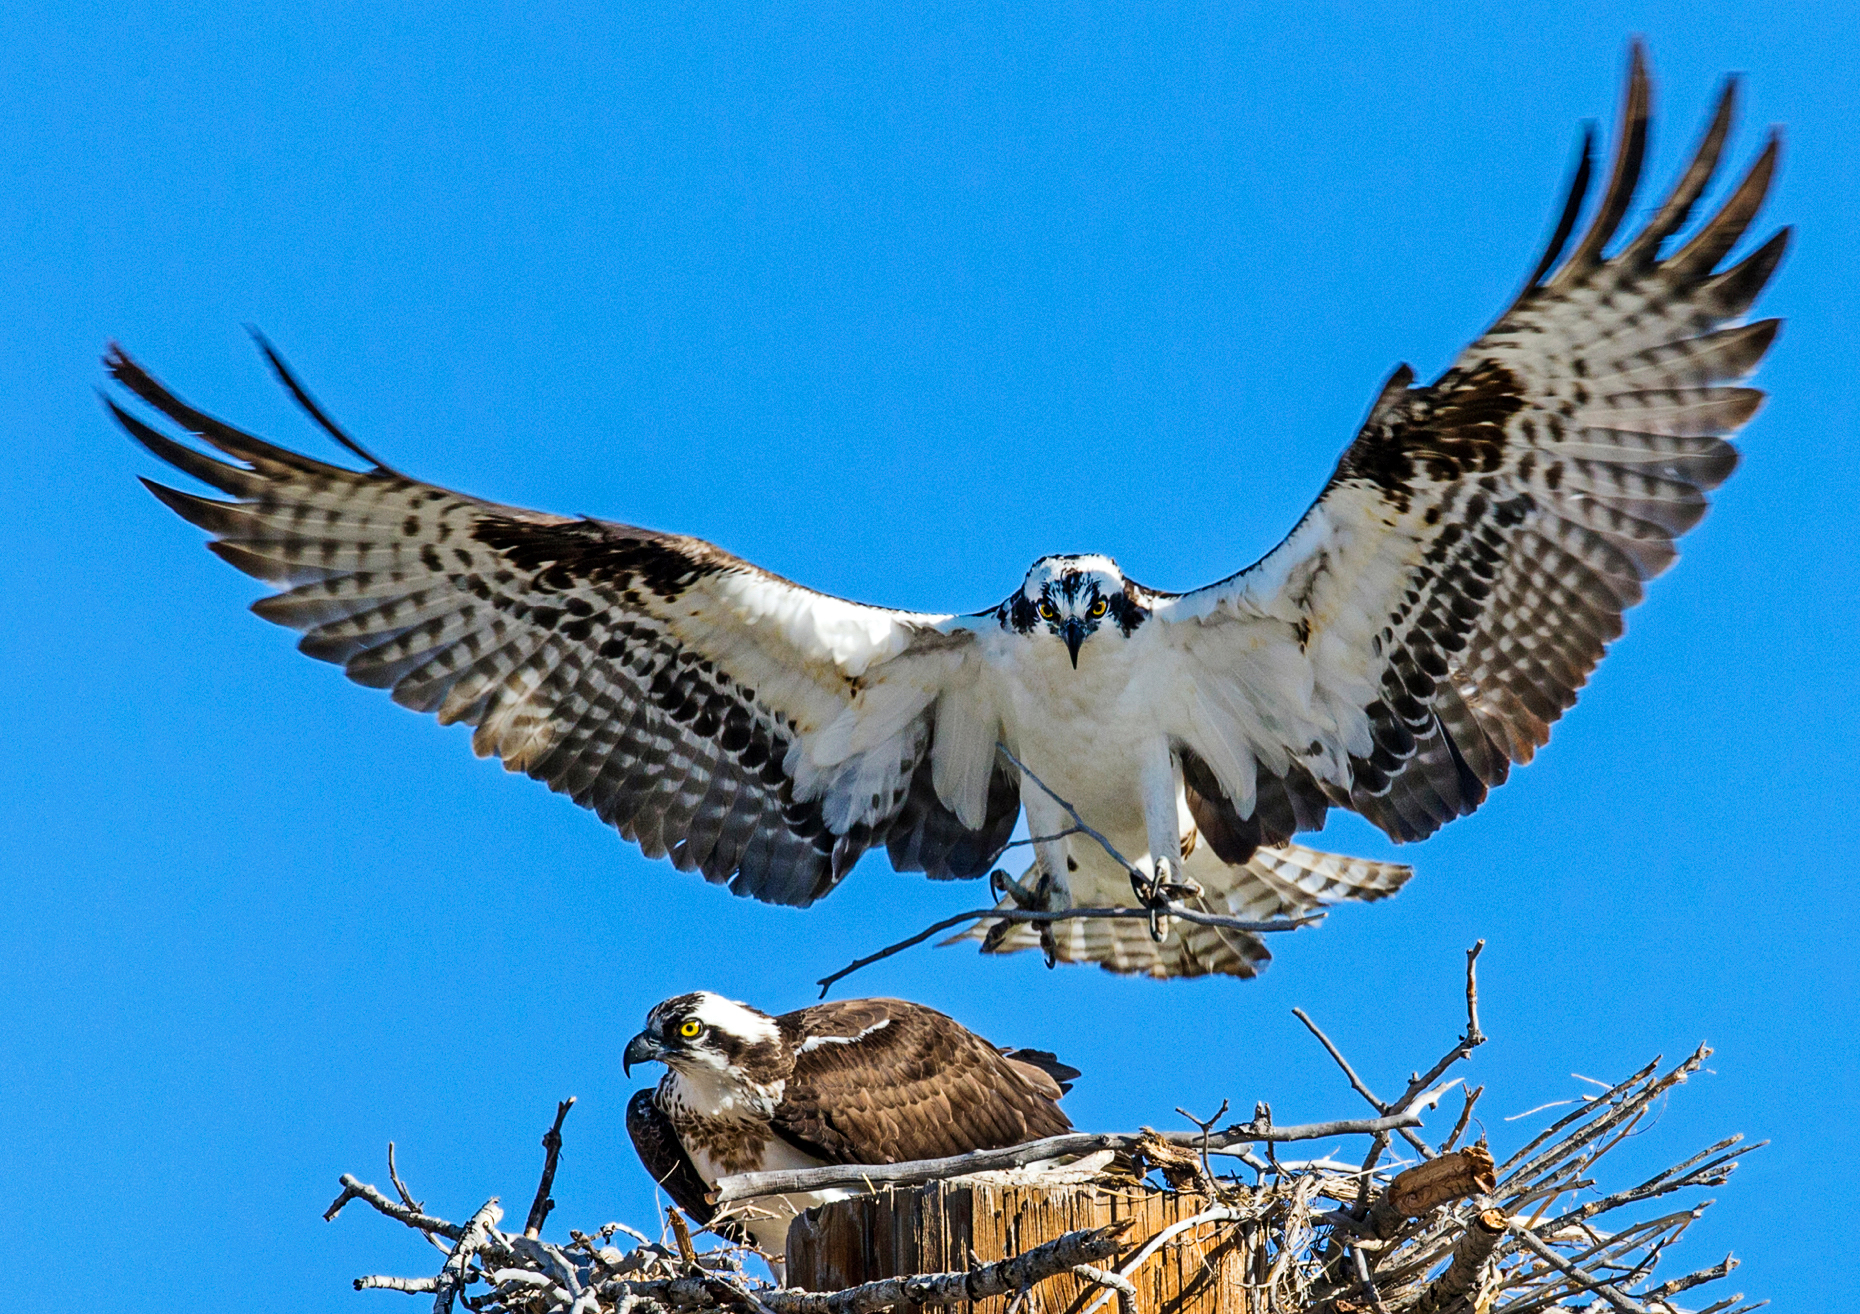 Osprey on nest, Pandion haliaetus, sea hawk, fish eagle, river hawk, fish hawk, raptor, Chaffee County, Colorado, USA